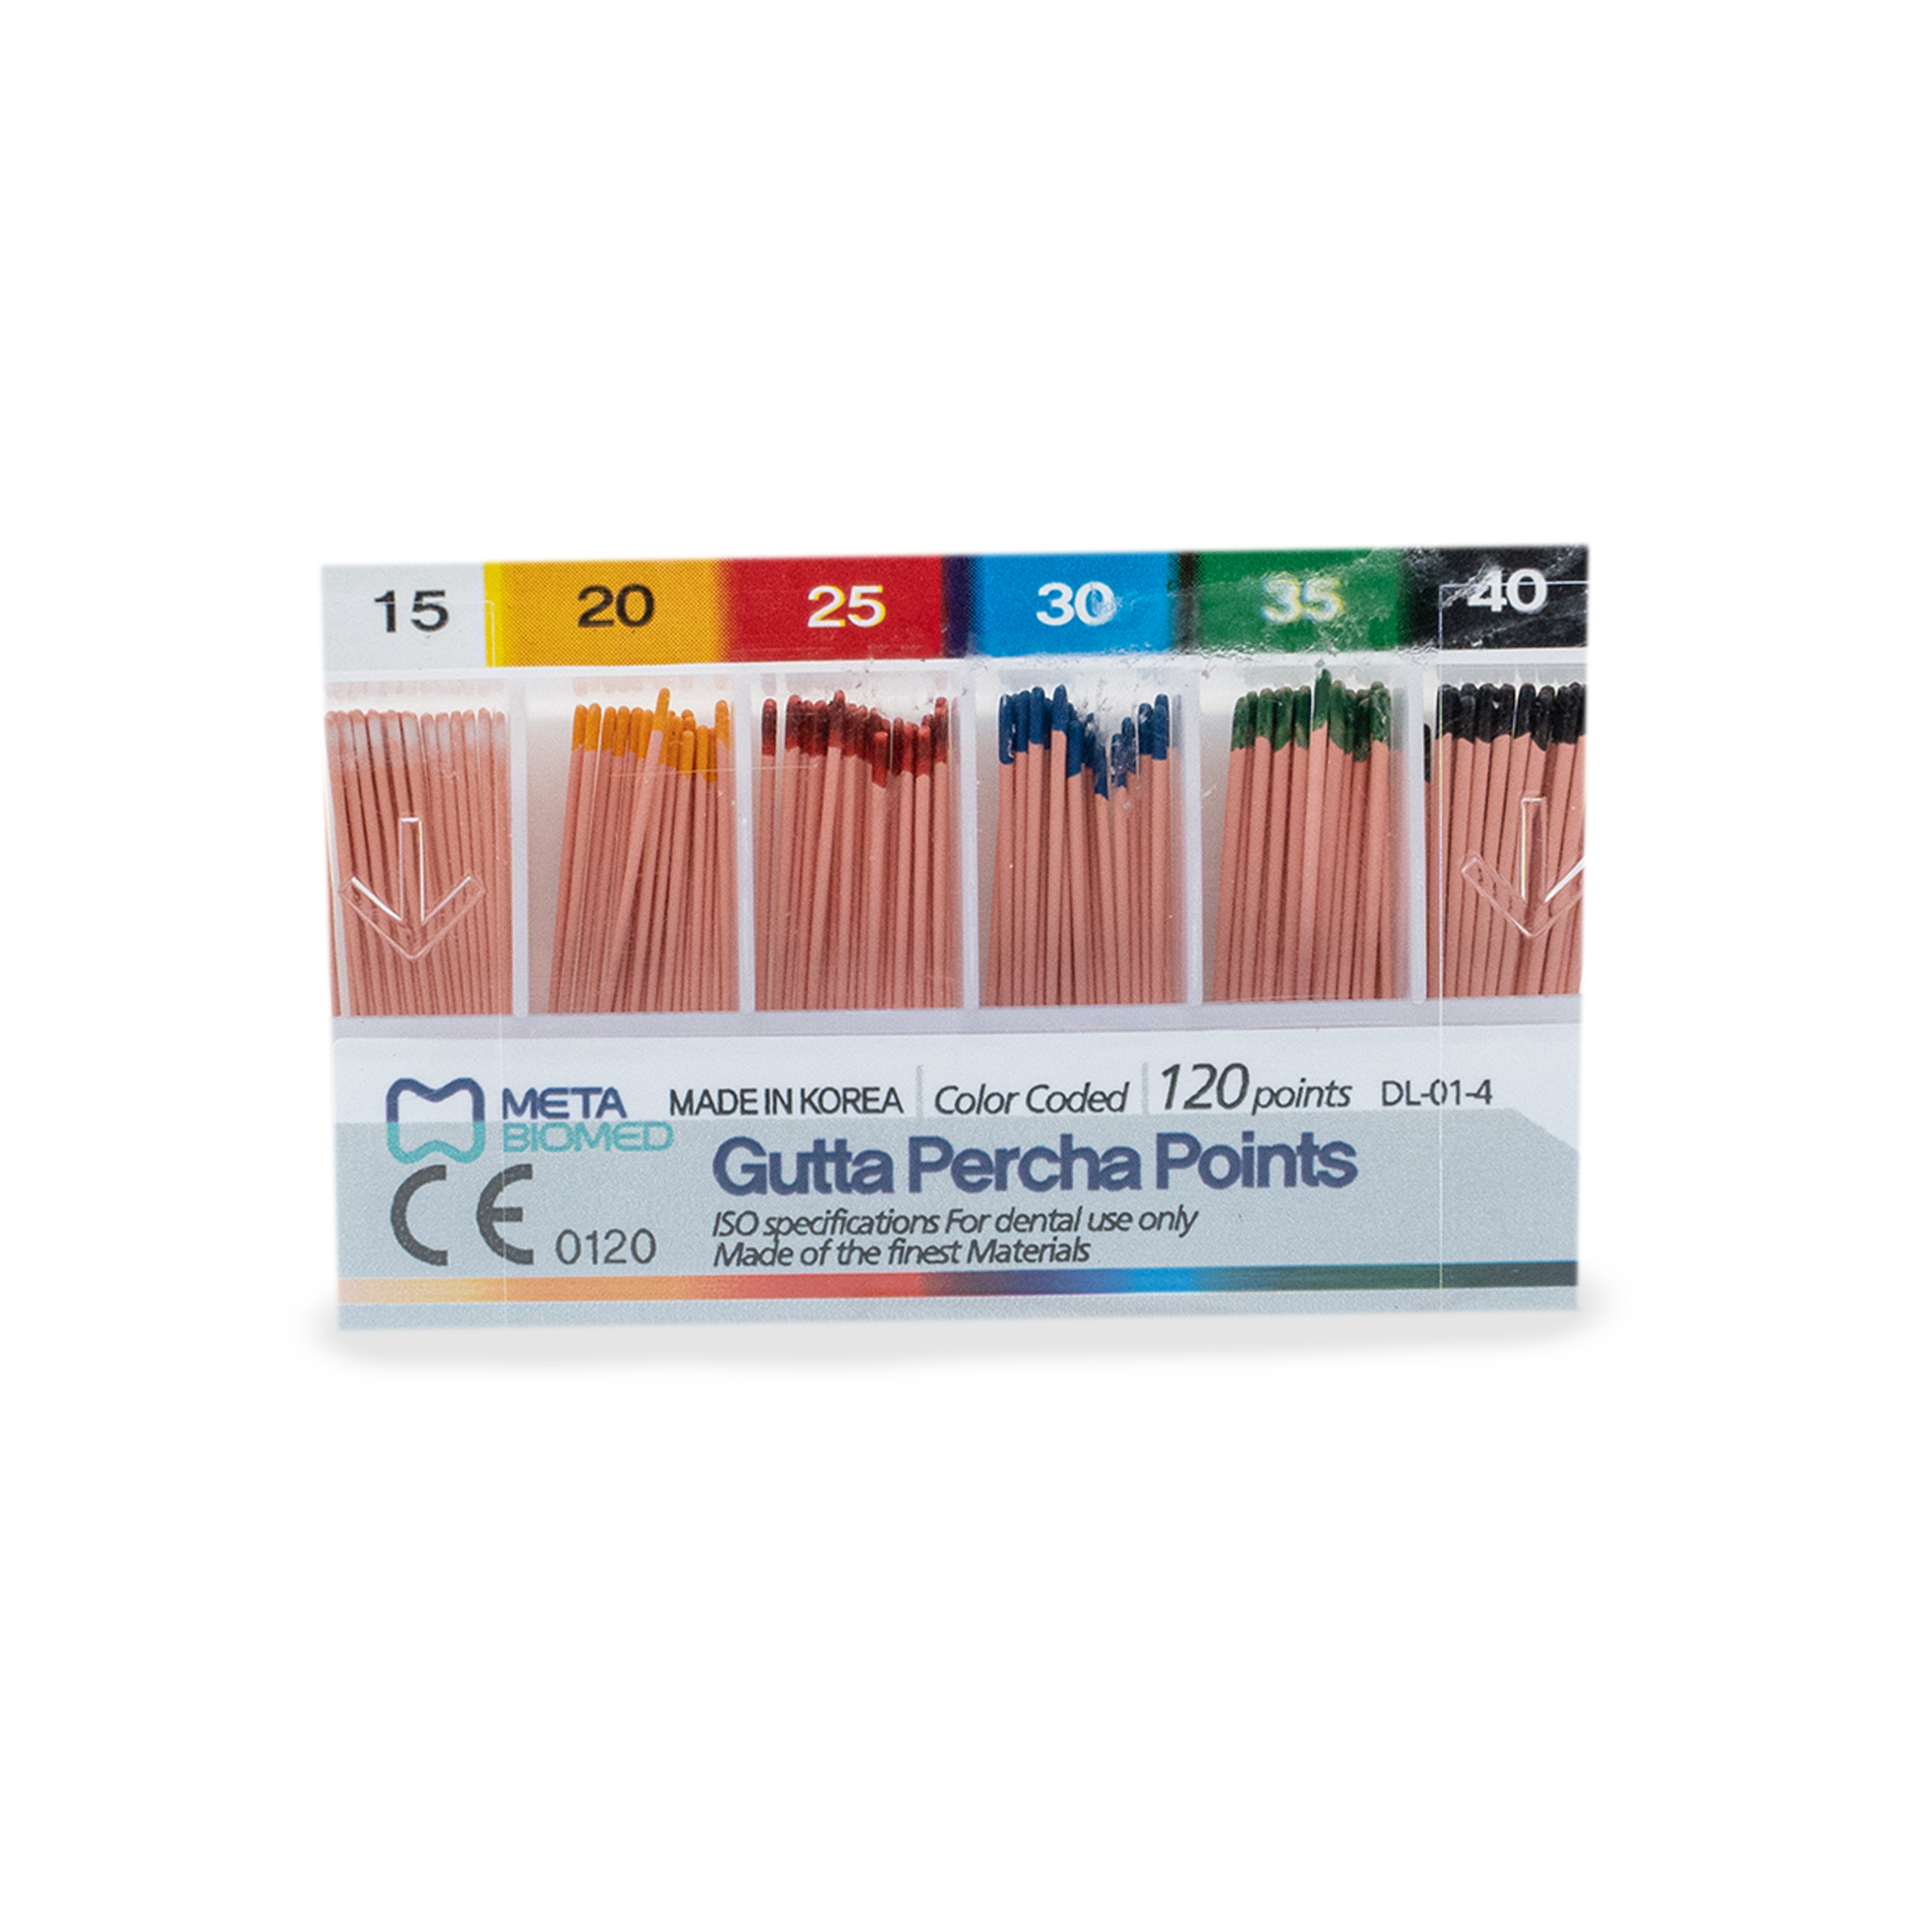 Meta Biomed Gutta Percha Points F2 Aurum Pro 2%